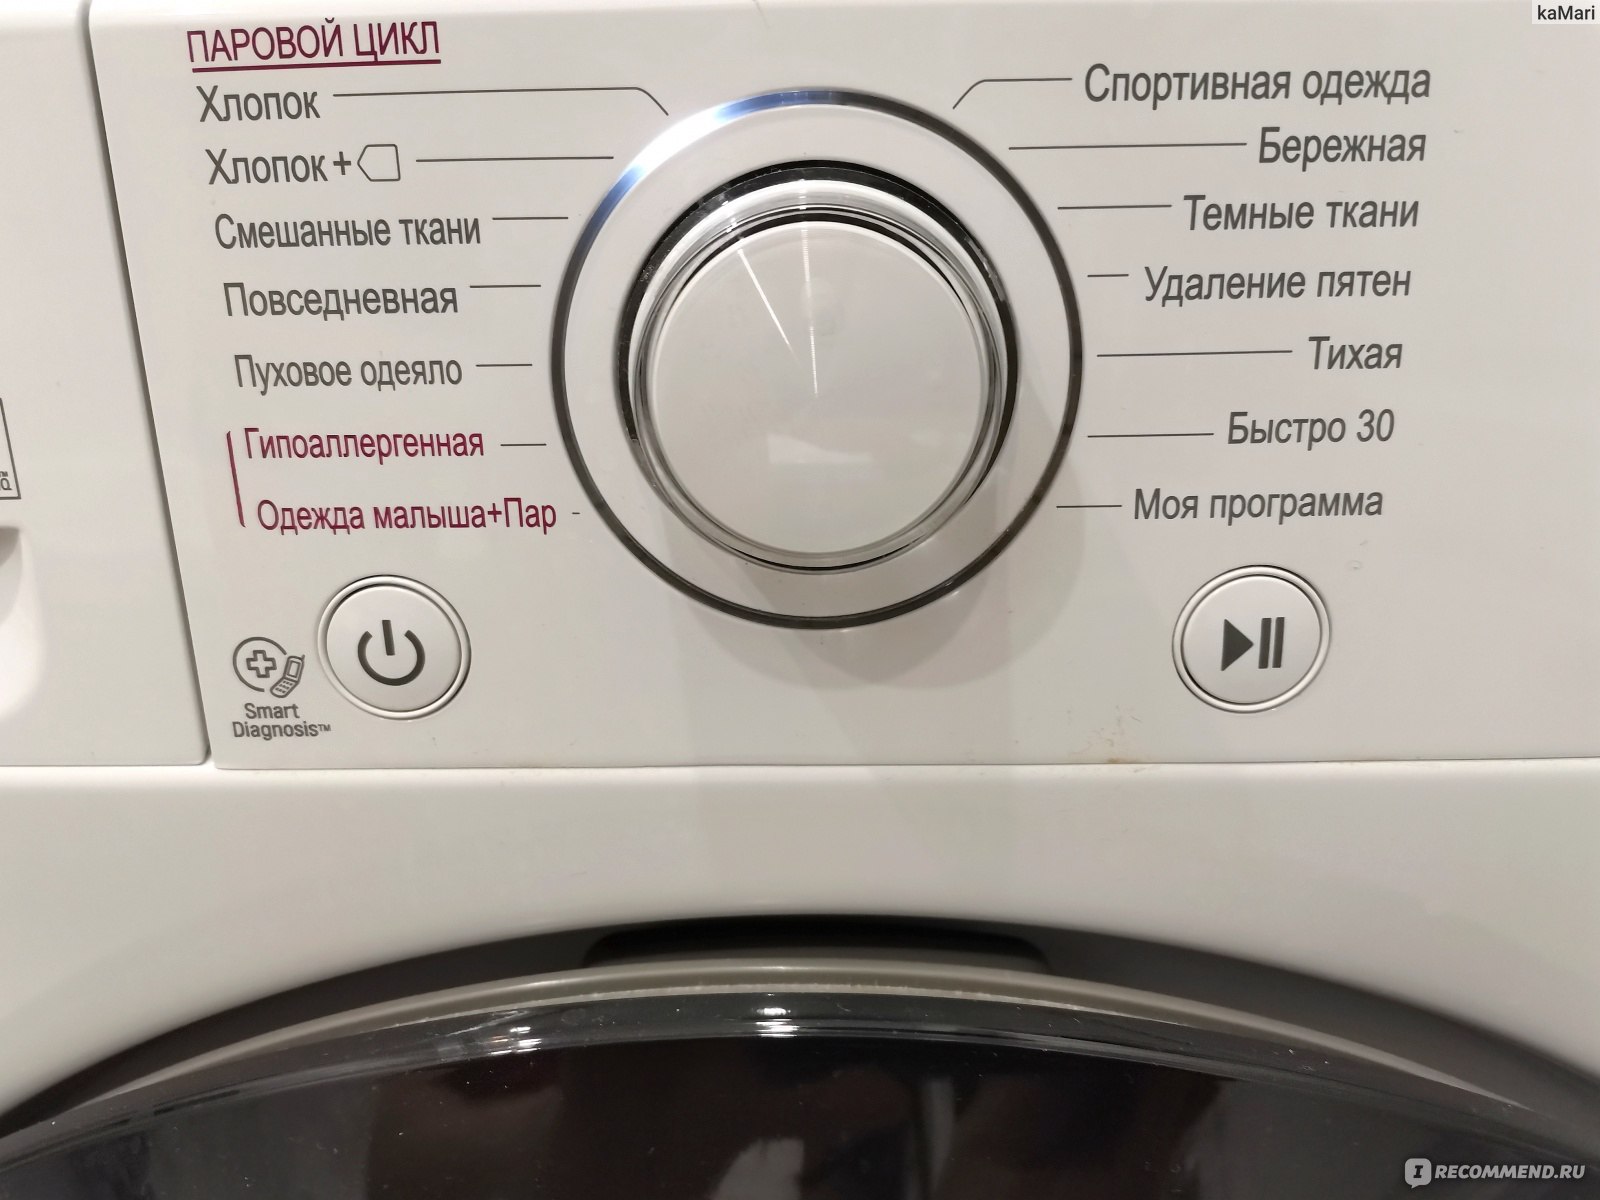 что такое функция пара steam в стиральной машине фото 62